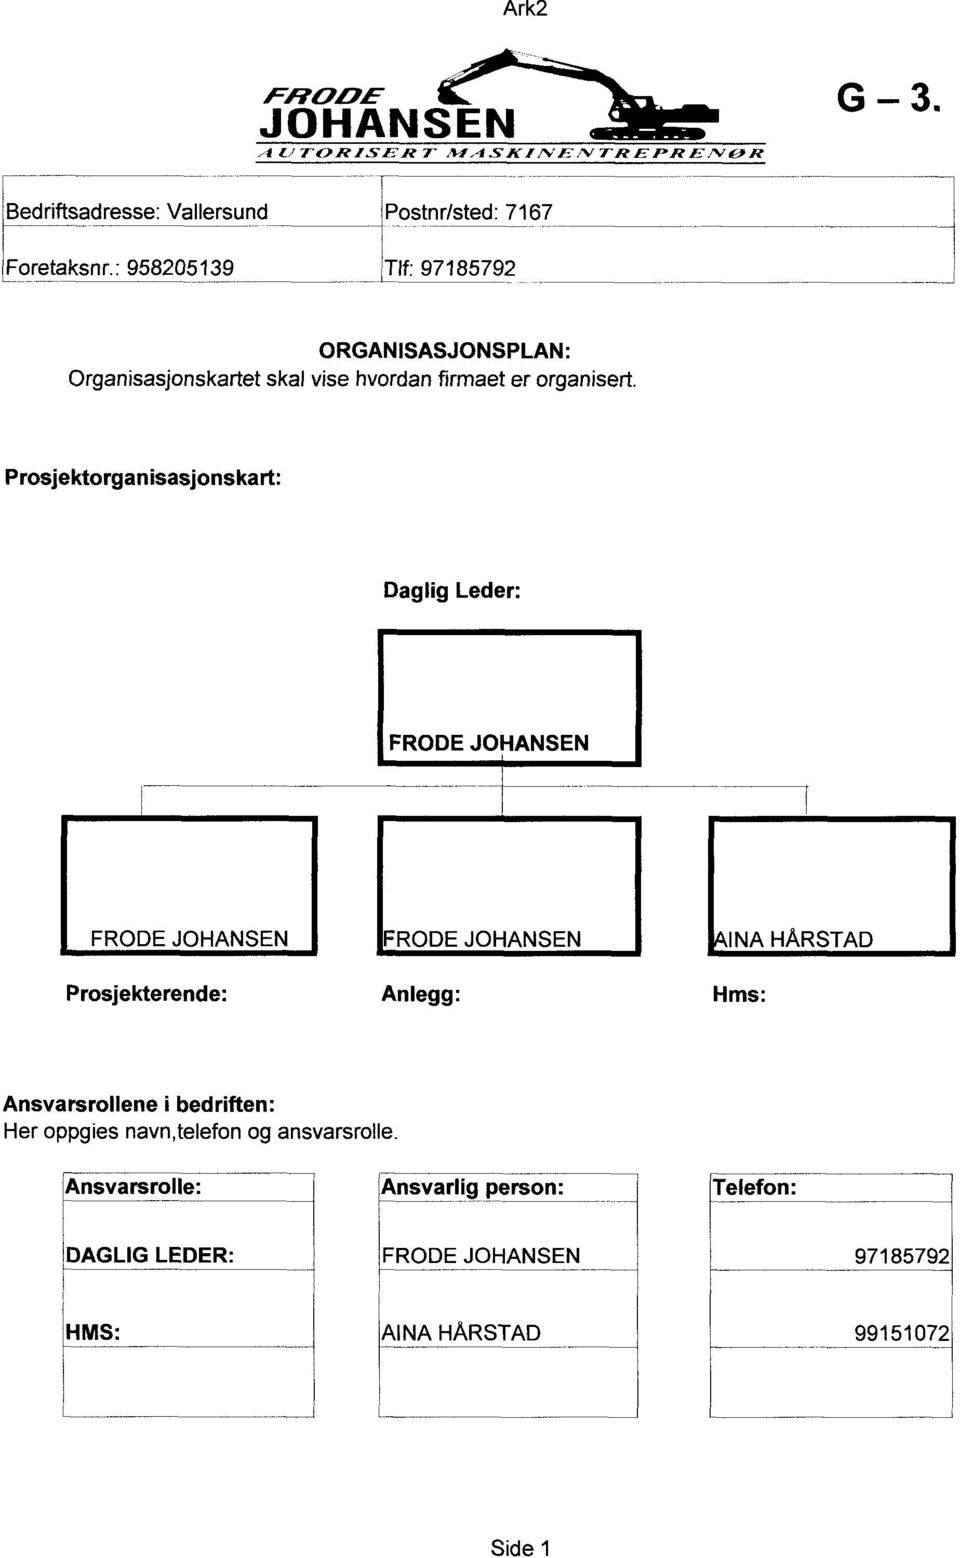 Prosjektorganisasjonskart: Daglig Leder: IAINA HÅRSTAD Prosjekterende: Anlegg: Hms: Ansvarsrollene i bedriften: Her